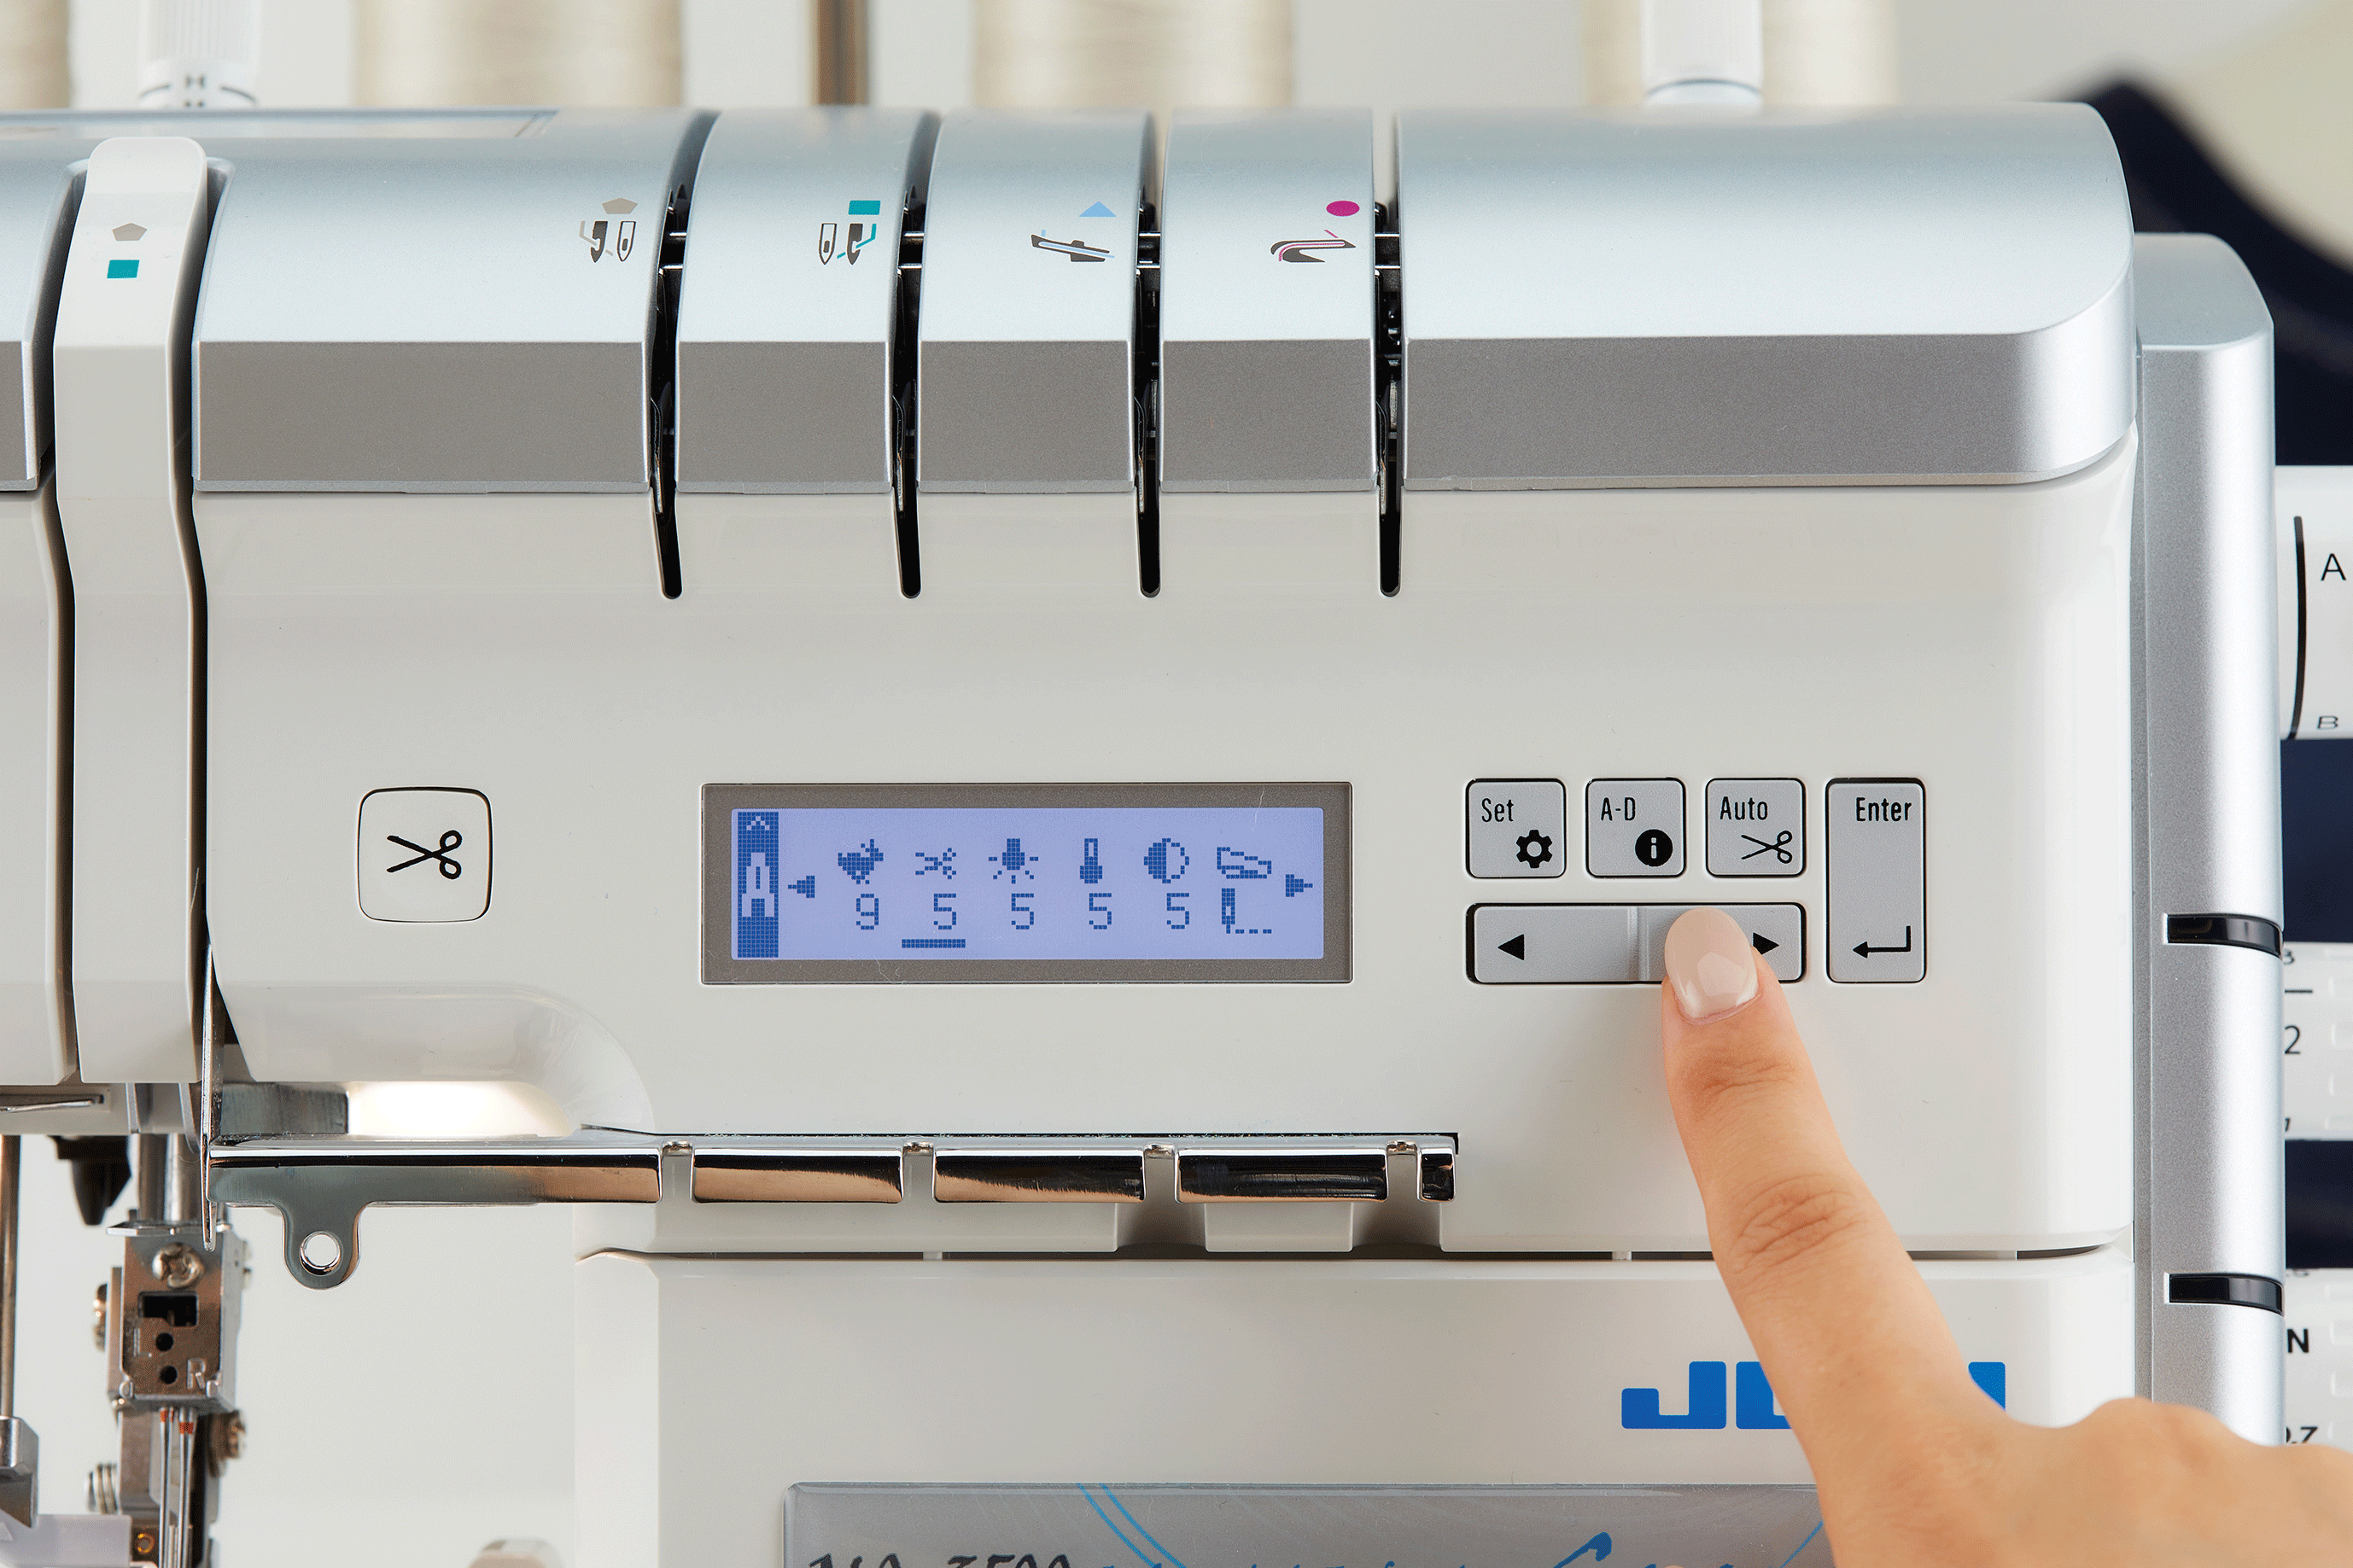 Juki TL-2010Q Quilting & Sewing Machine